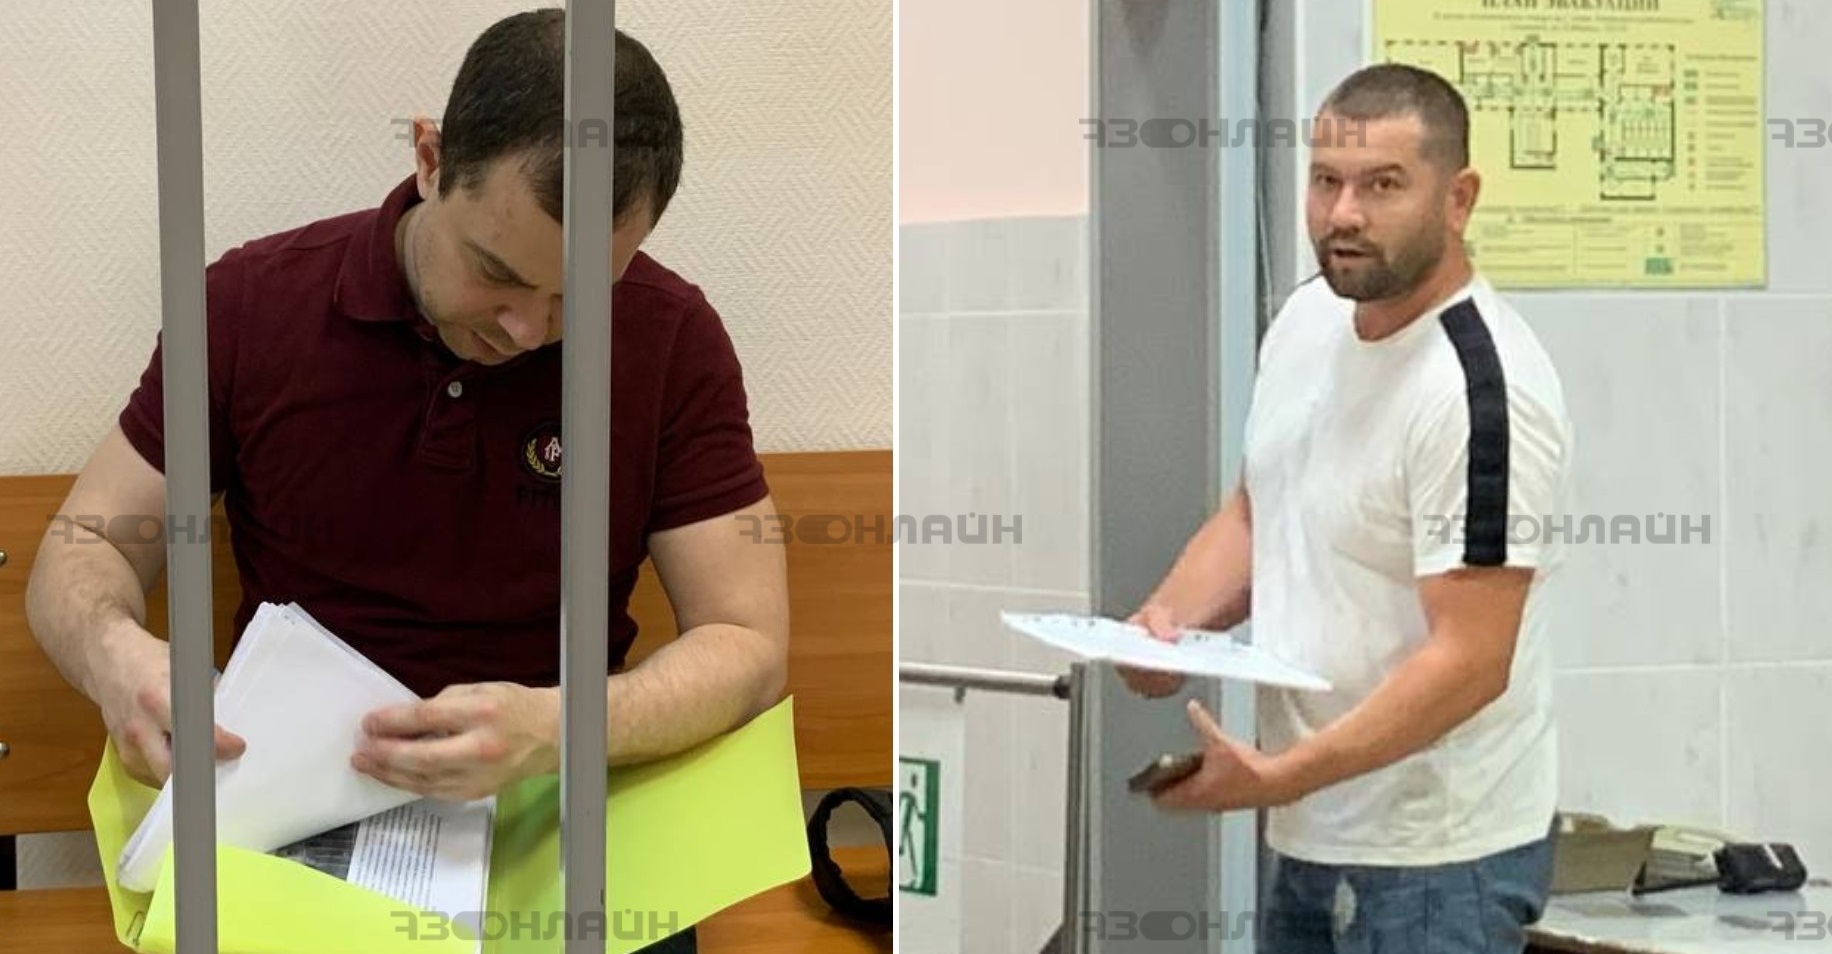 Кальянное дело: Гулькин встретился в суде с бывшим «передастом» Кутуевым